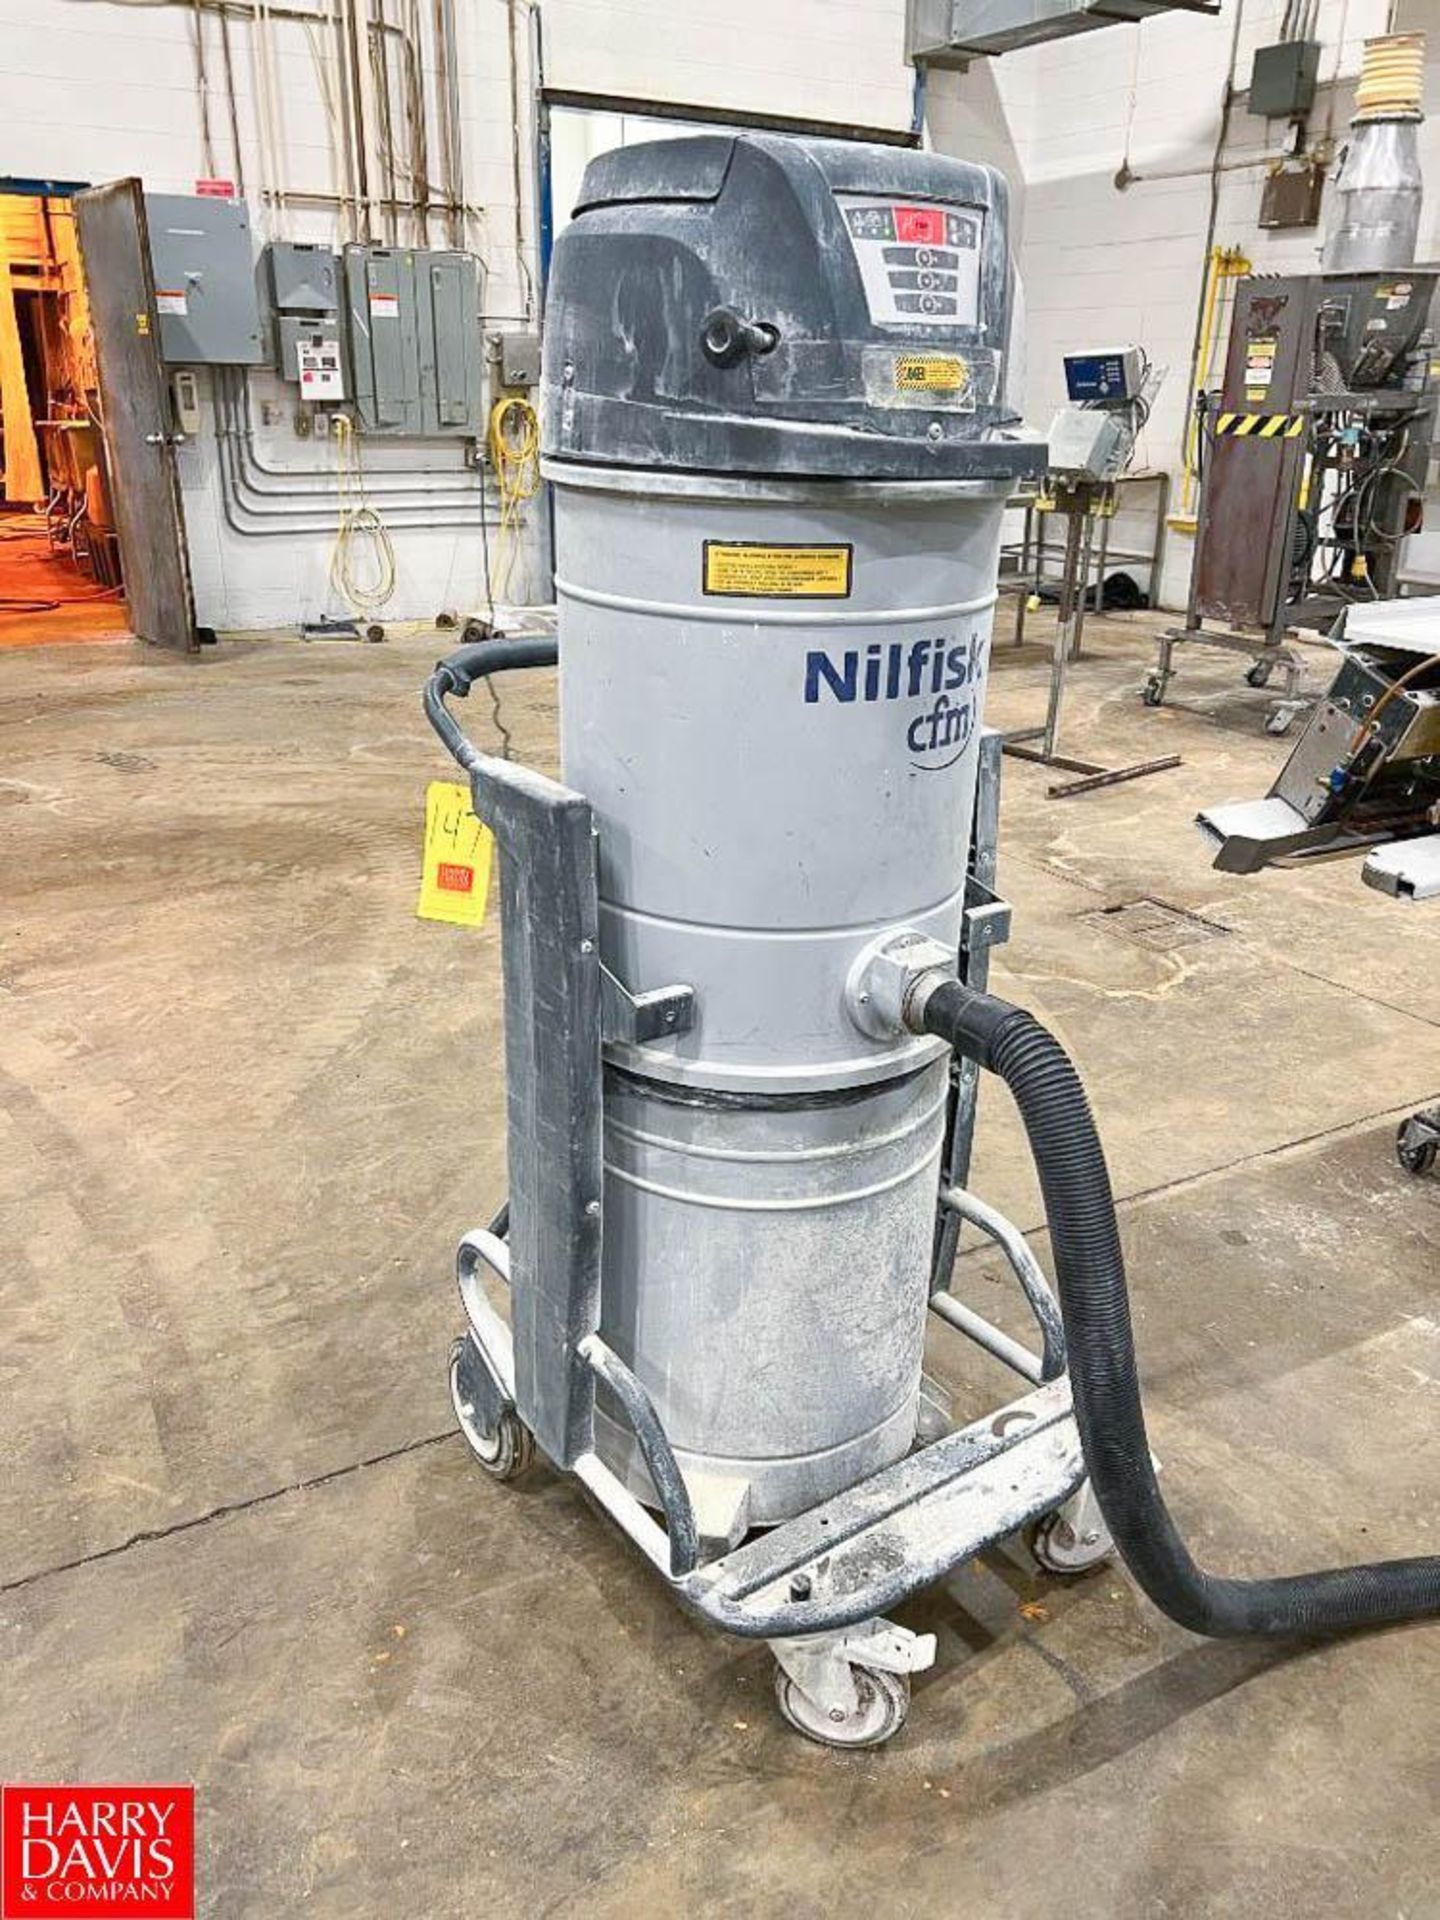 Nilfisk Industrial Vacuum, Type: S3N1 - Rigging Fee: $75